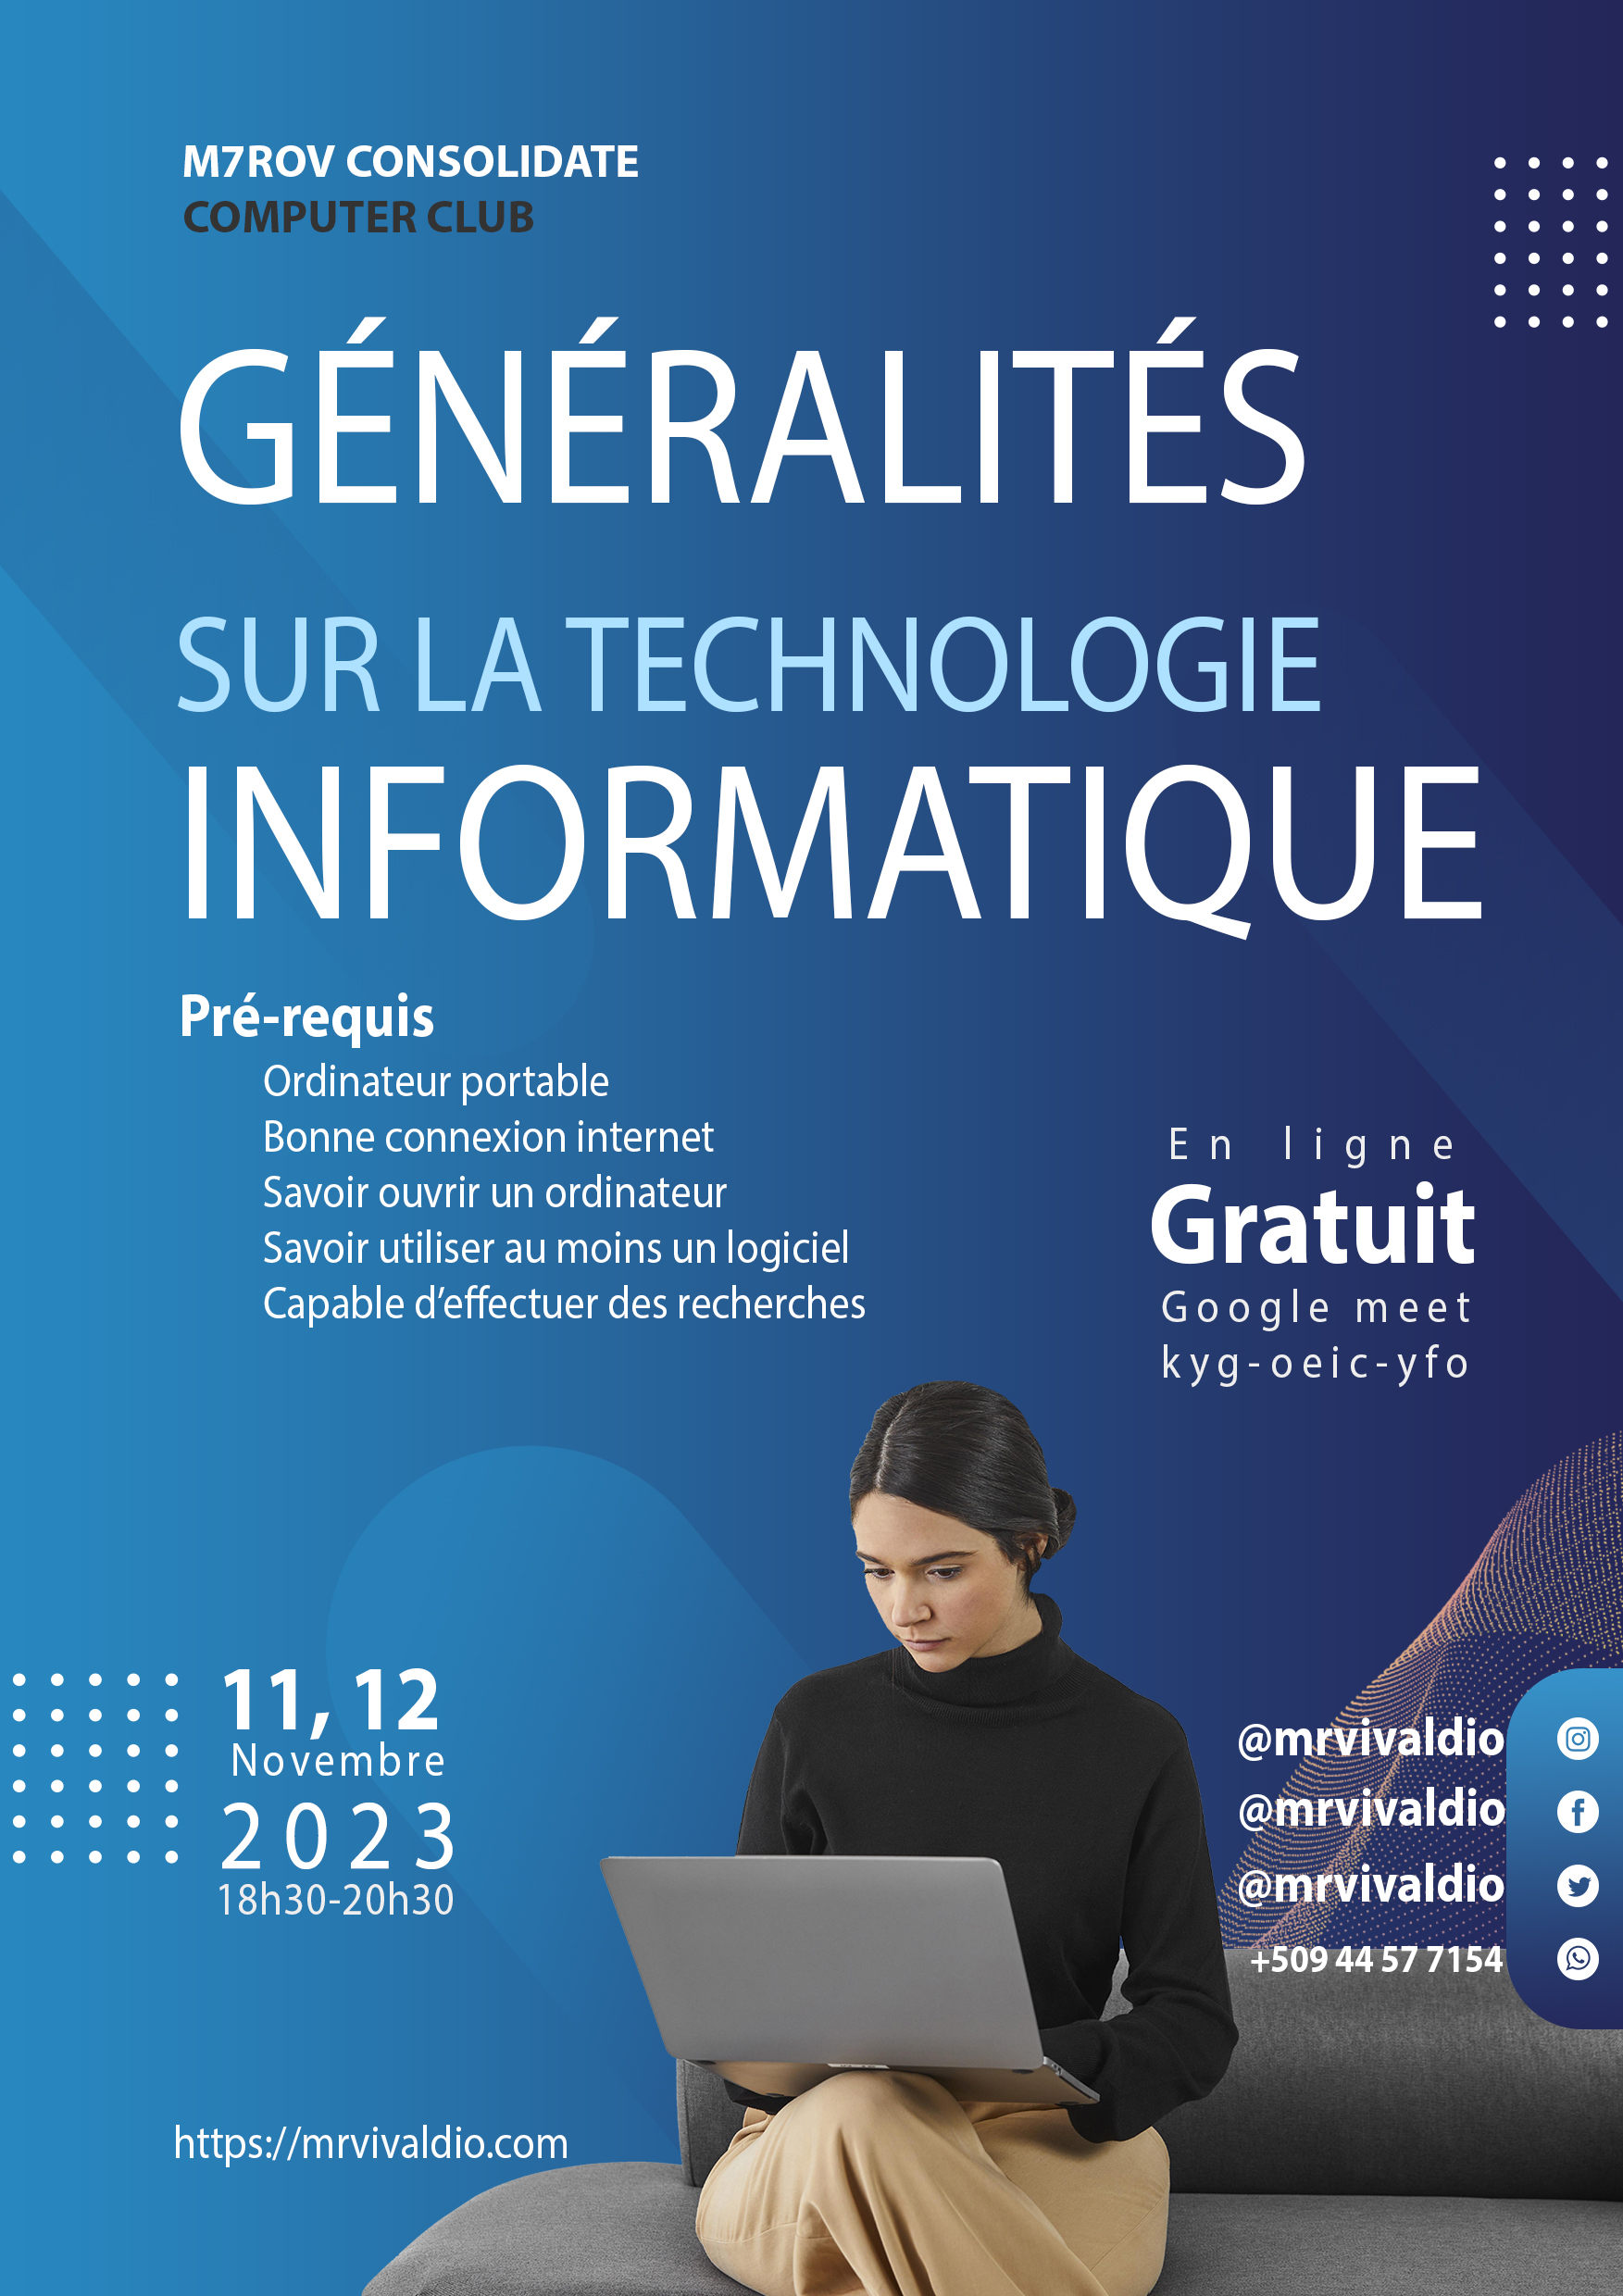 Event of Dr. R. Vivaldi O MAURICE on Généralités sur la Technologie Informatique - première partie